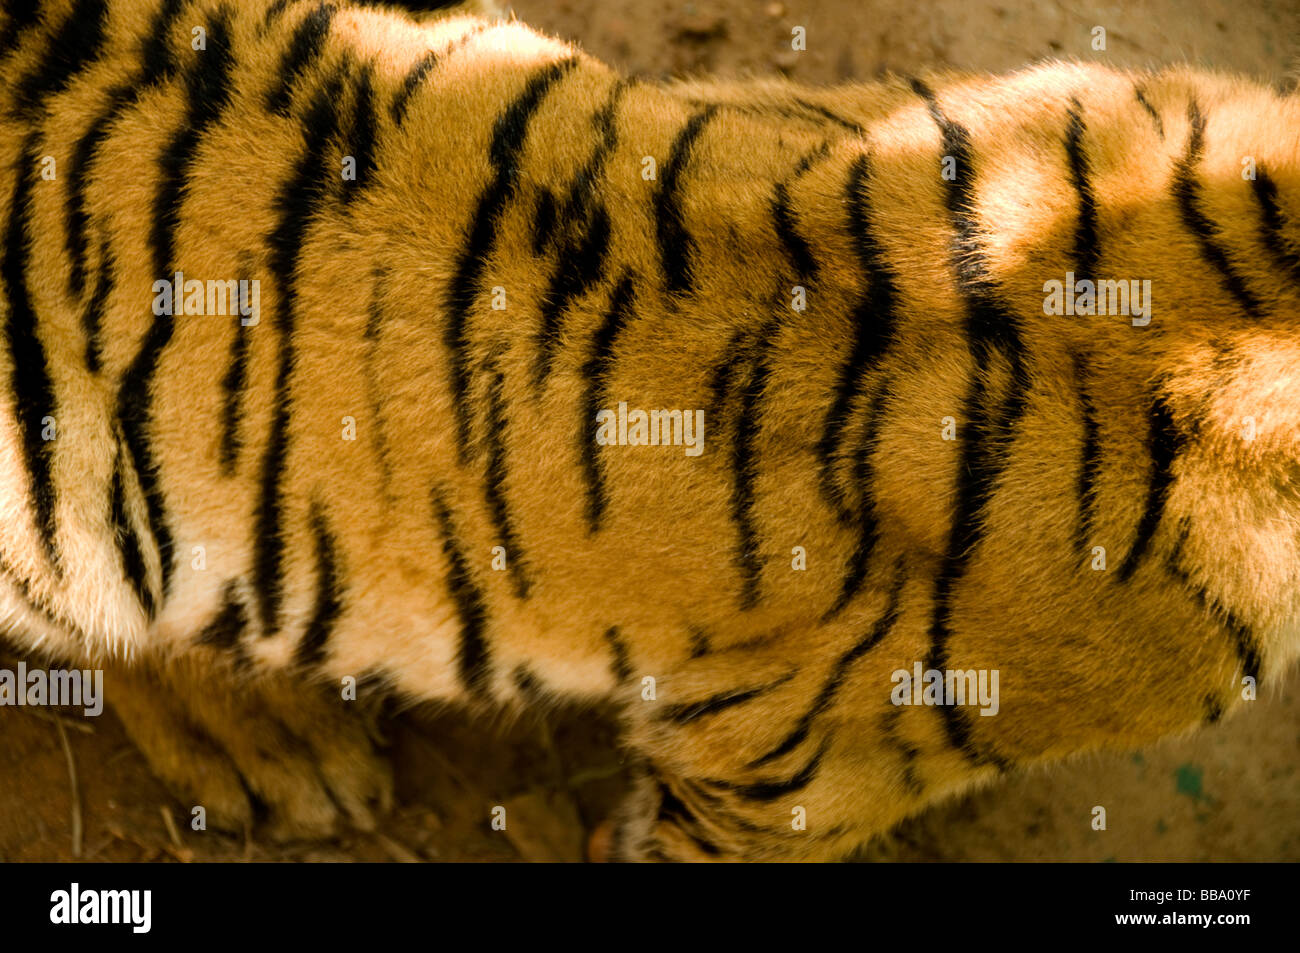 Bengal Tiger Cub close up Stock Photo